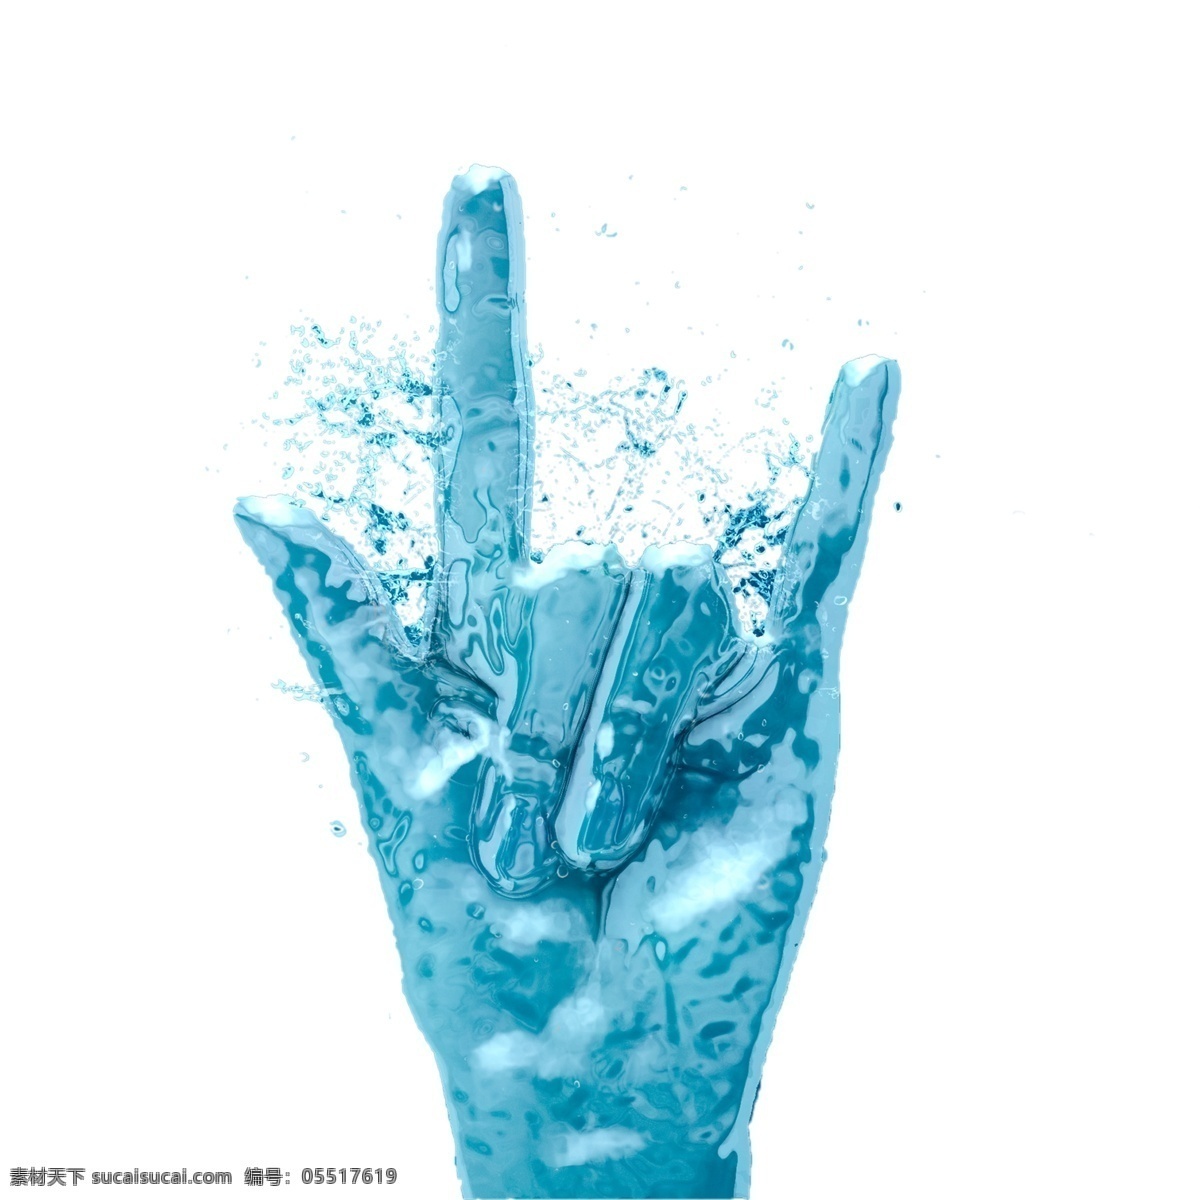 蓝色 液体 我爱你 手部 姿势 效果图 液化效果 蓝色冰块 手指效果 手部动作 液体特效 液态效果 蓝色液态